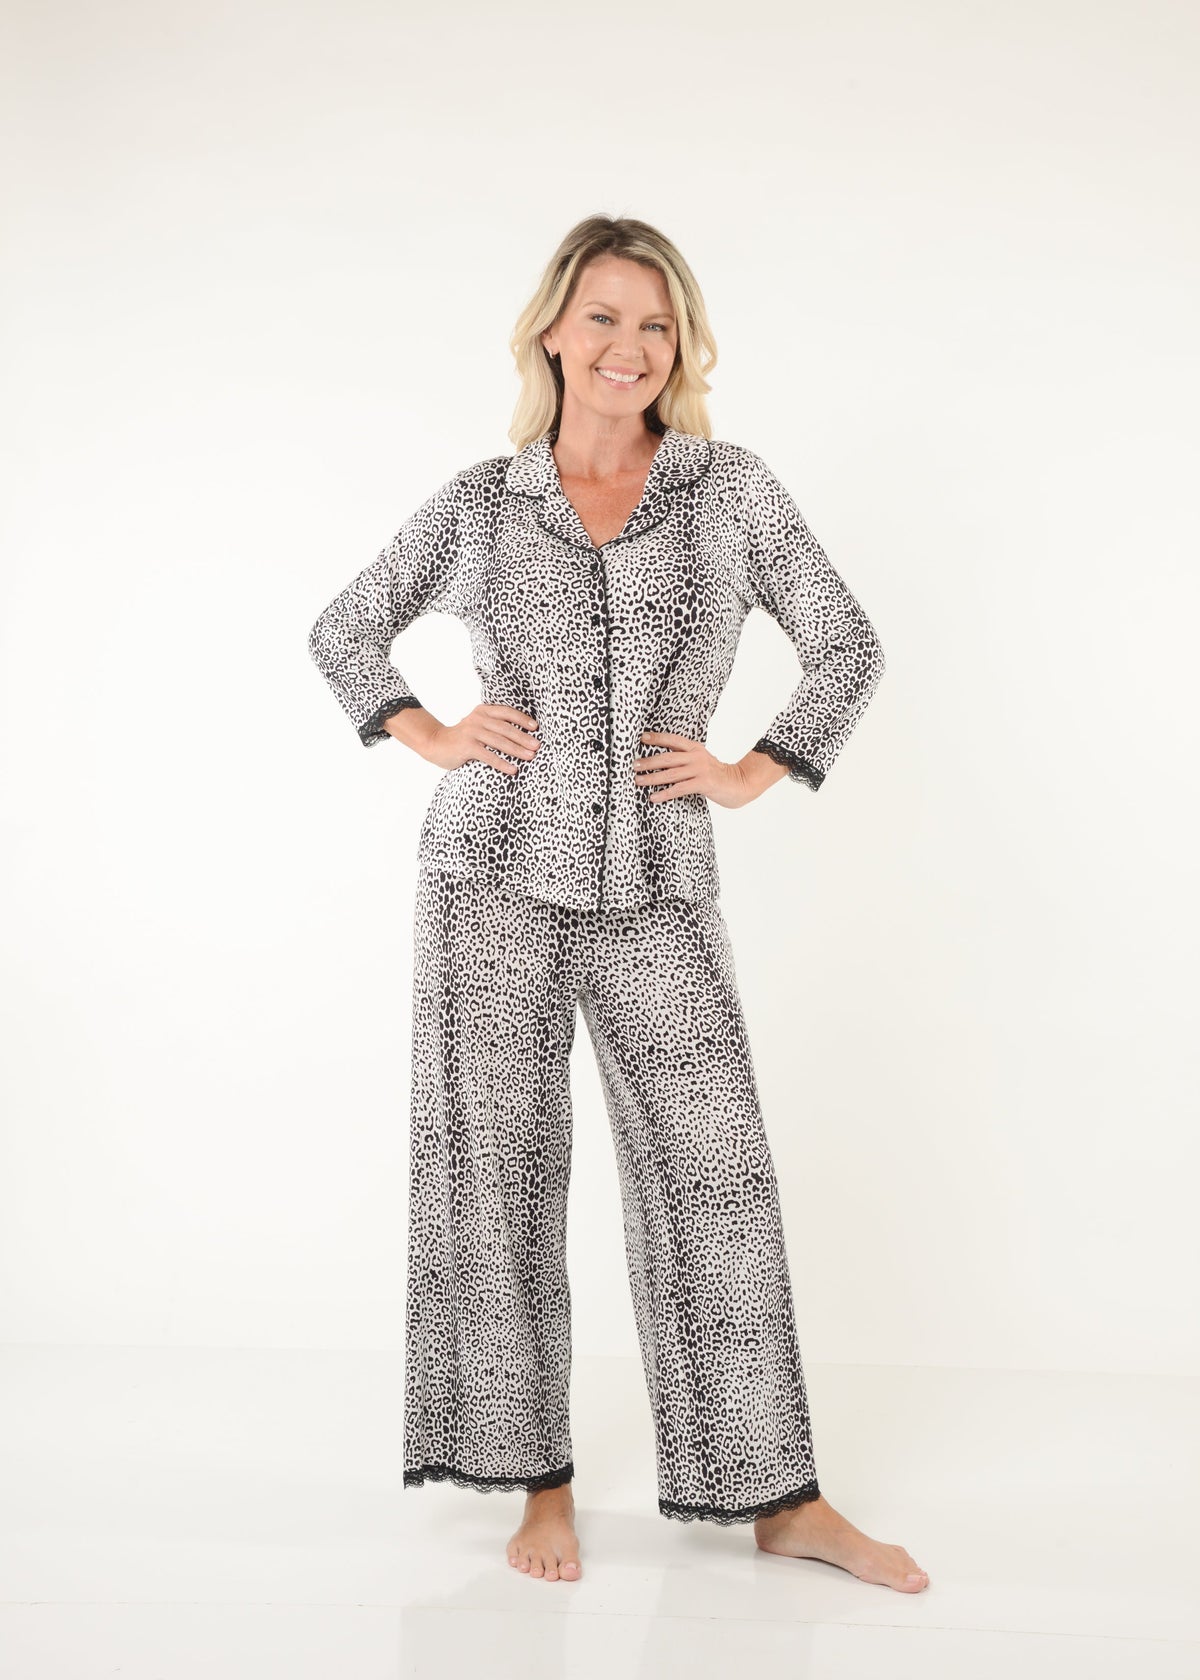 AherBiu Womens 2 Piece Pajamas Sets Button V Neck Long Sleeve Shirts with  Soft Pants Comfy Sleepwear Outfits